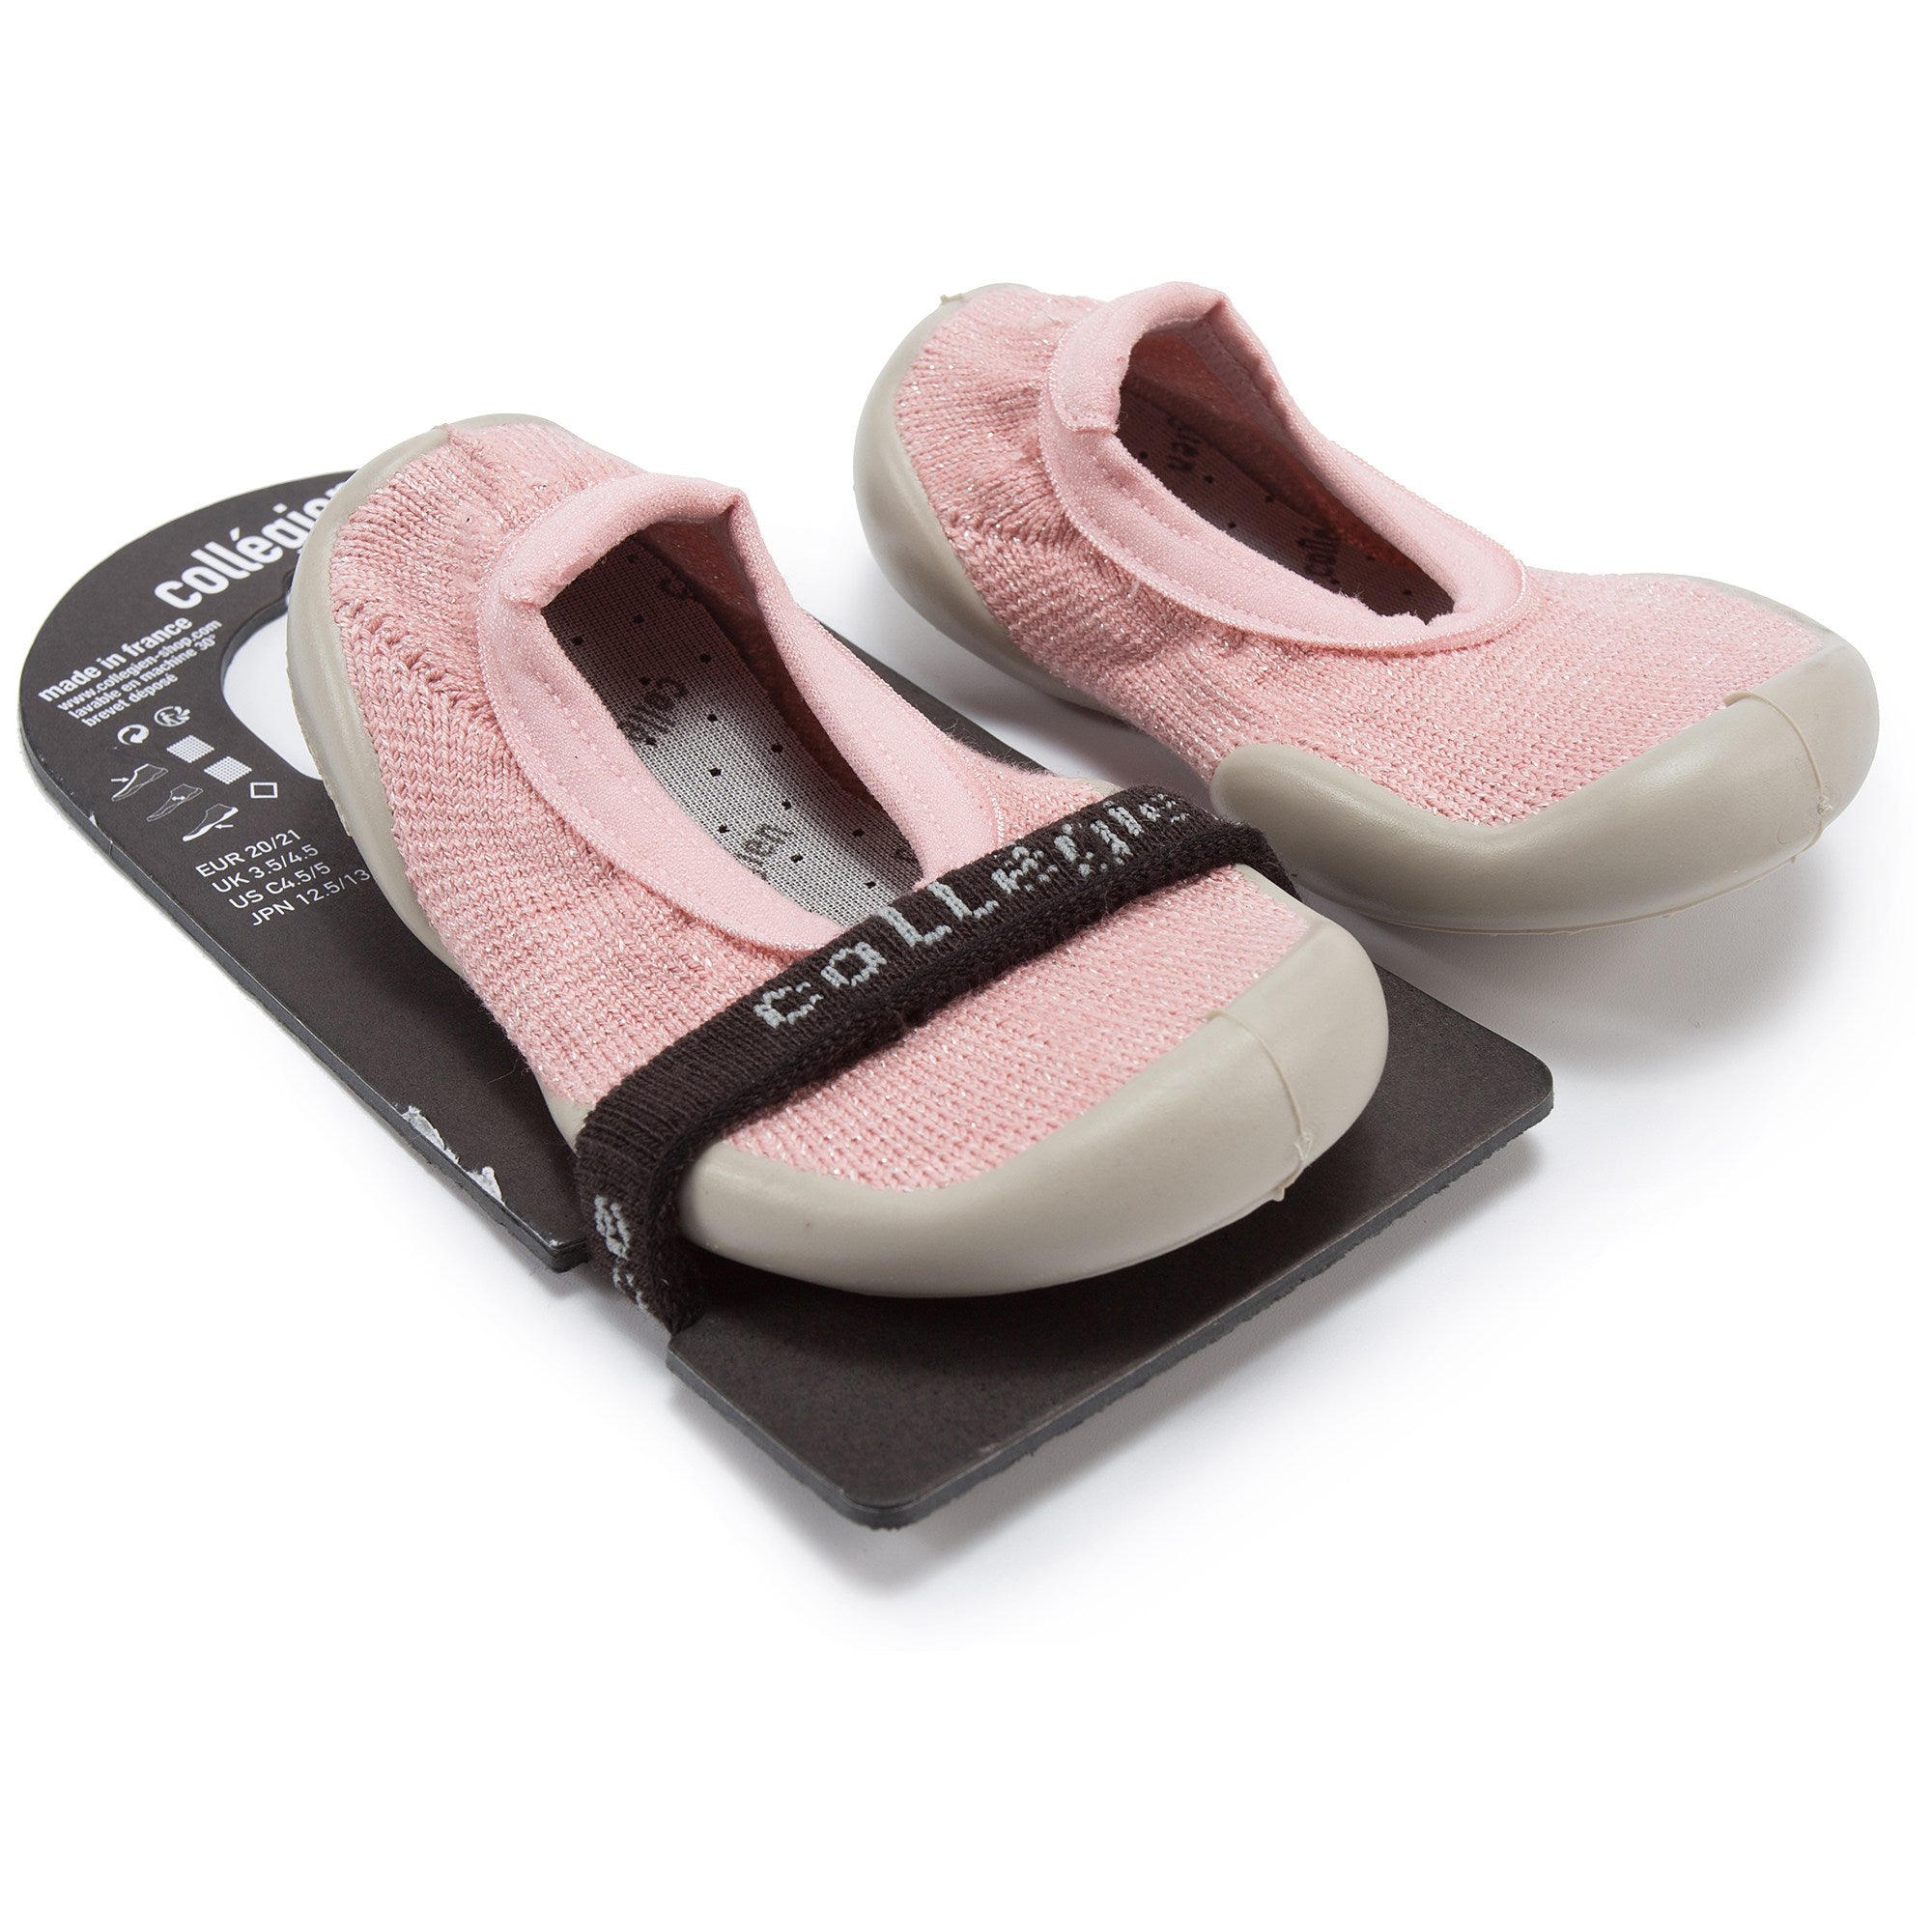 小童粉色袜子鞋